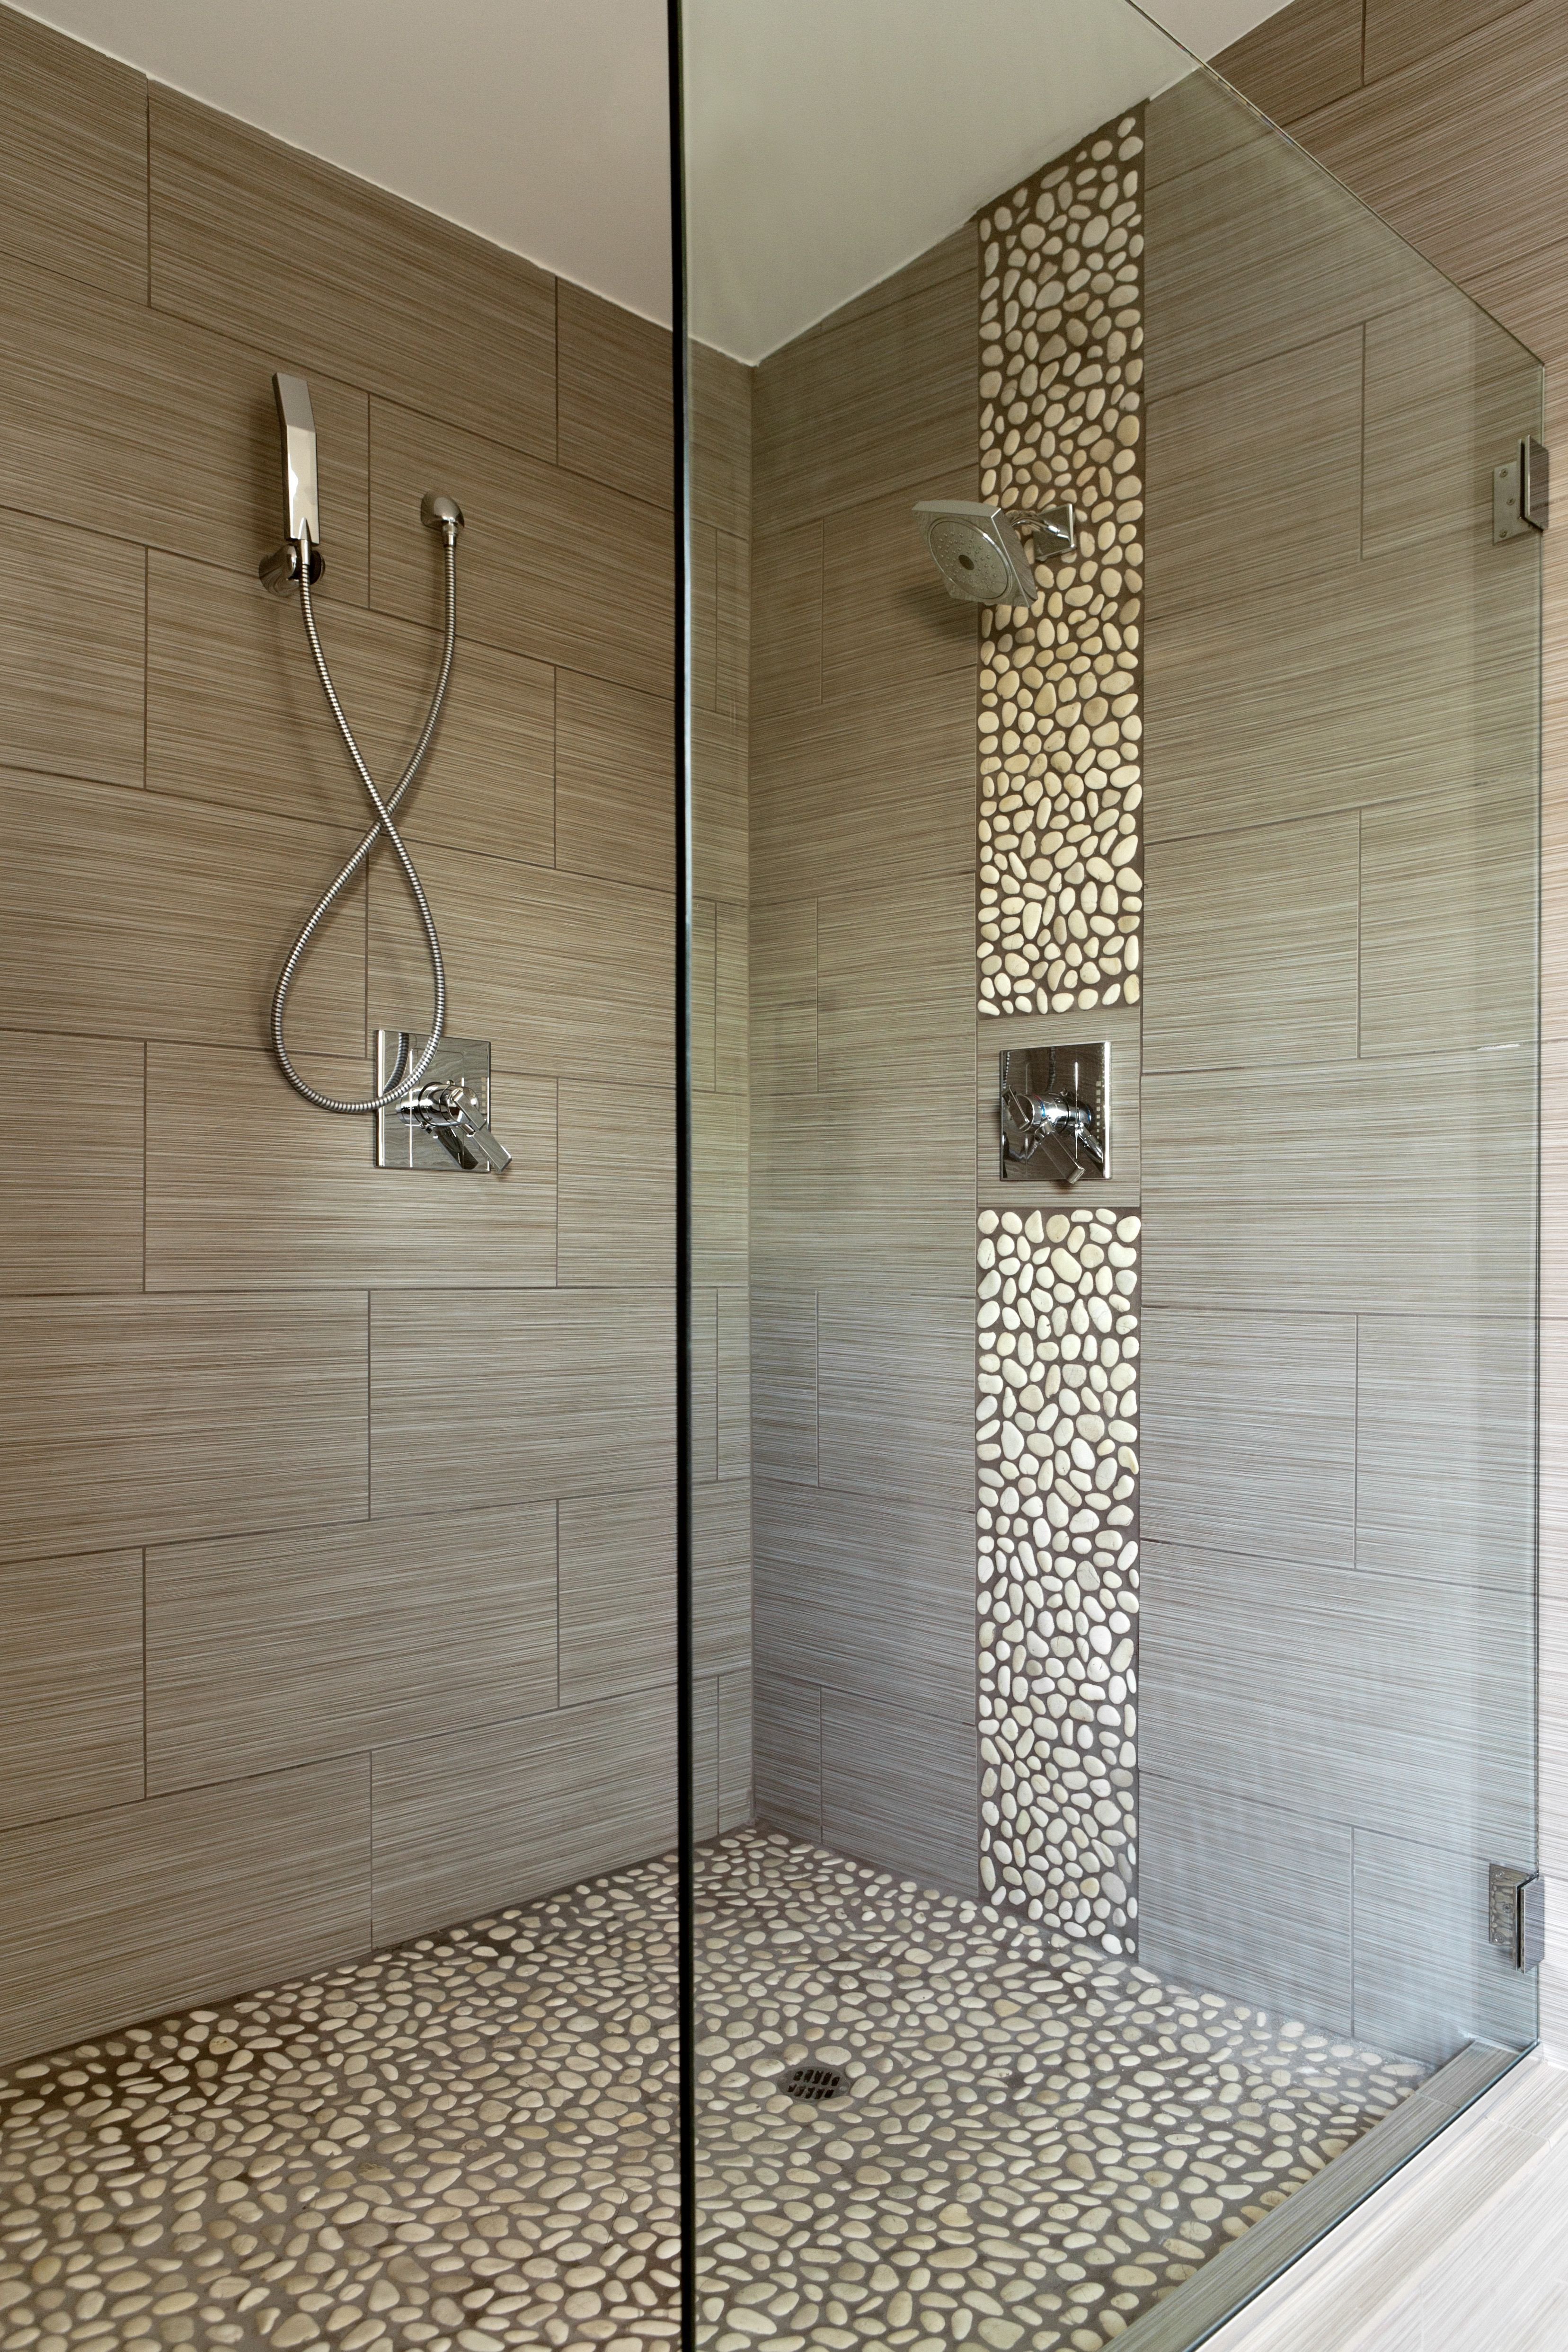 Floor and Decor Bathroom Tile Best Of 65 Bathroom Tile Ideas for the Home Pinterest